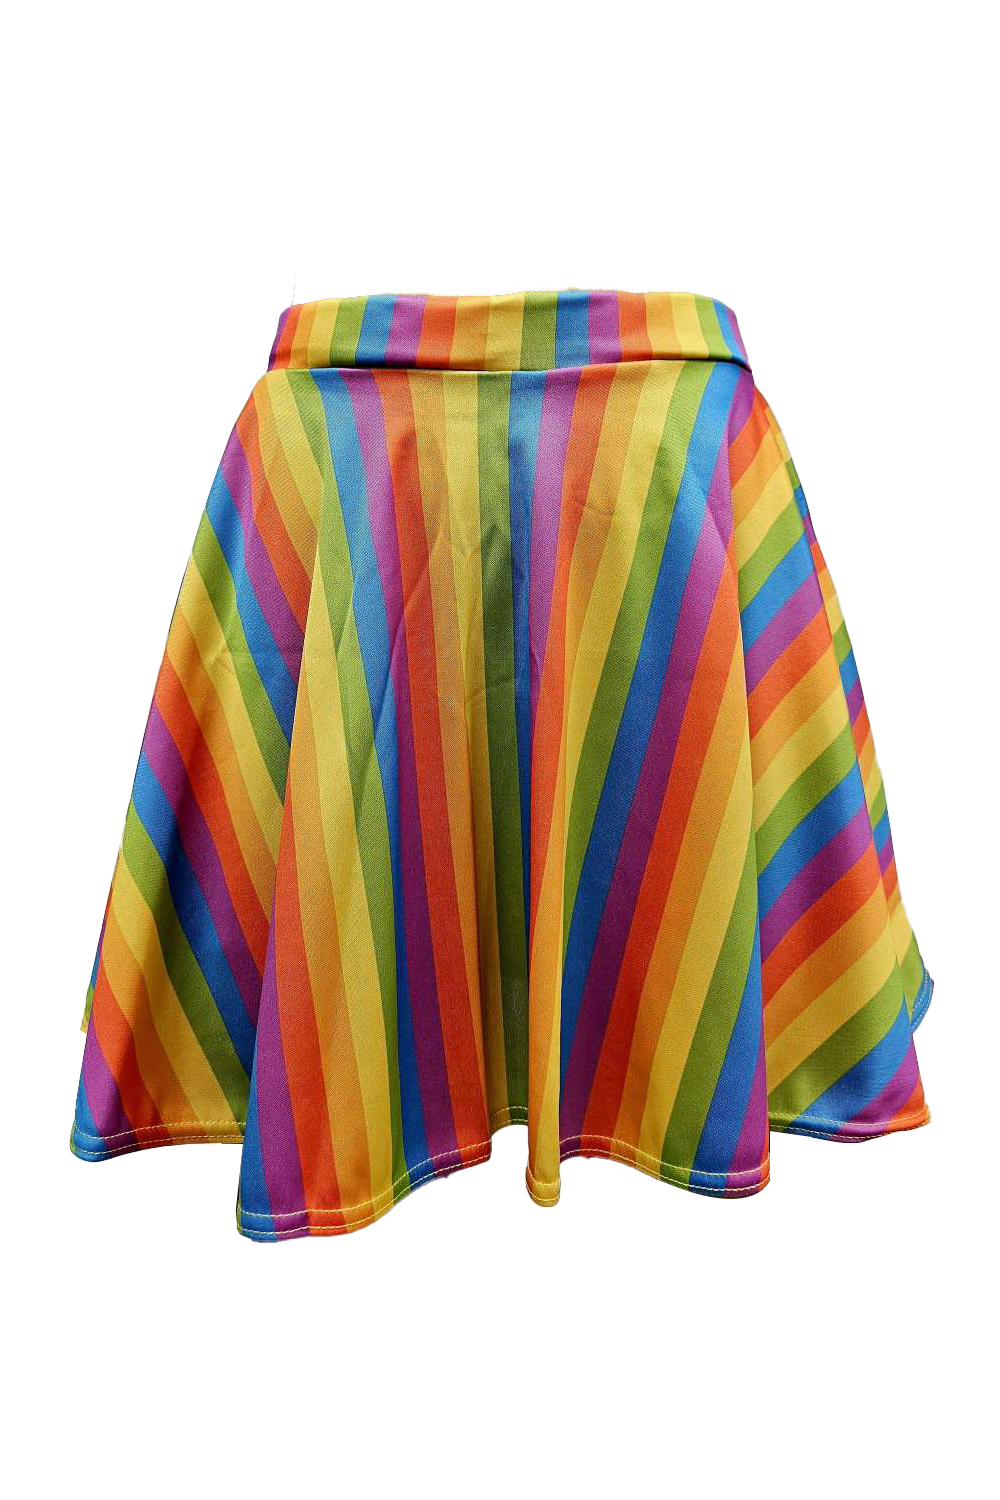 Wickedfun Adult Rainbow Skater skirt